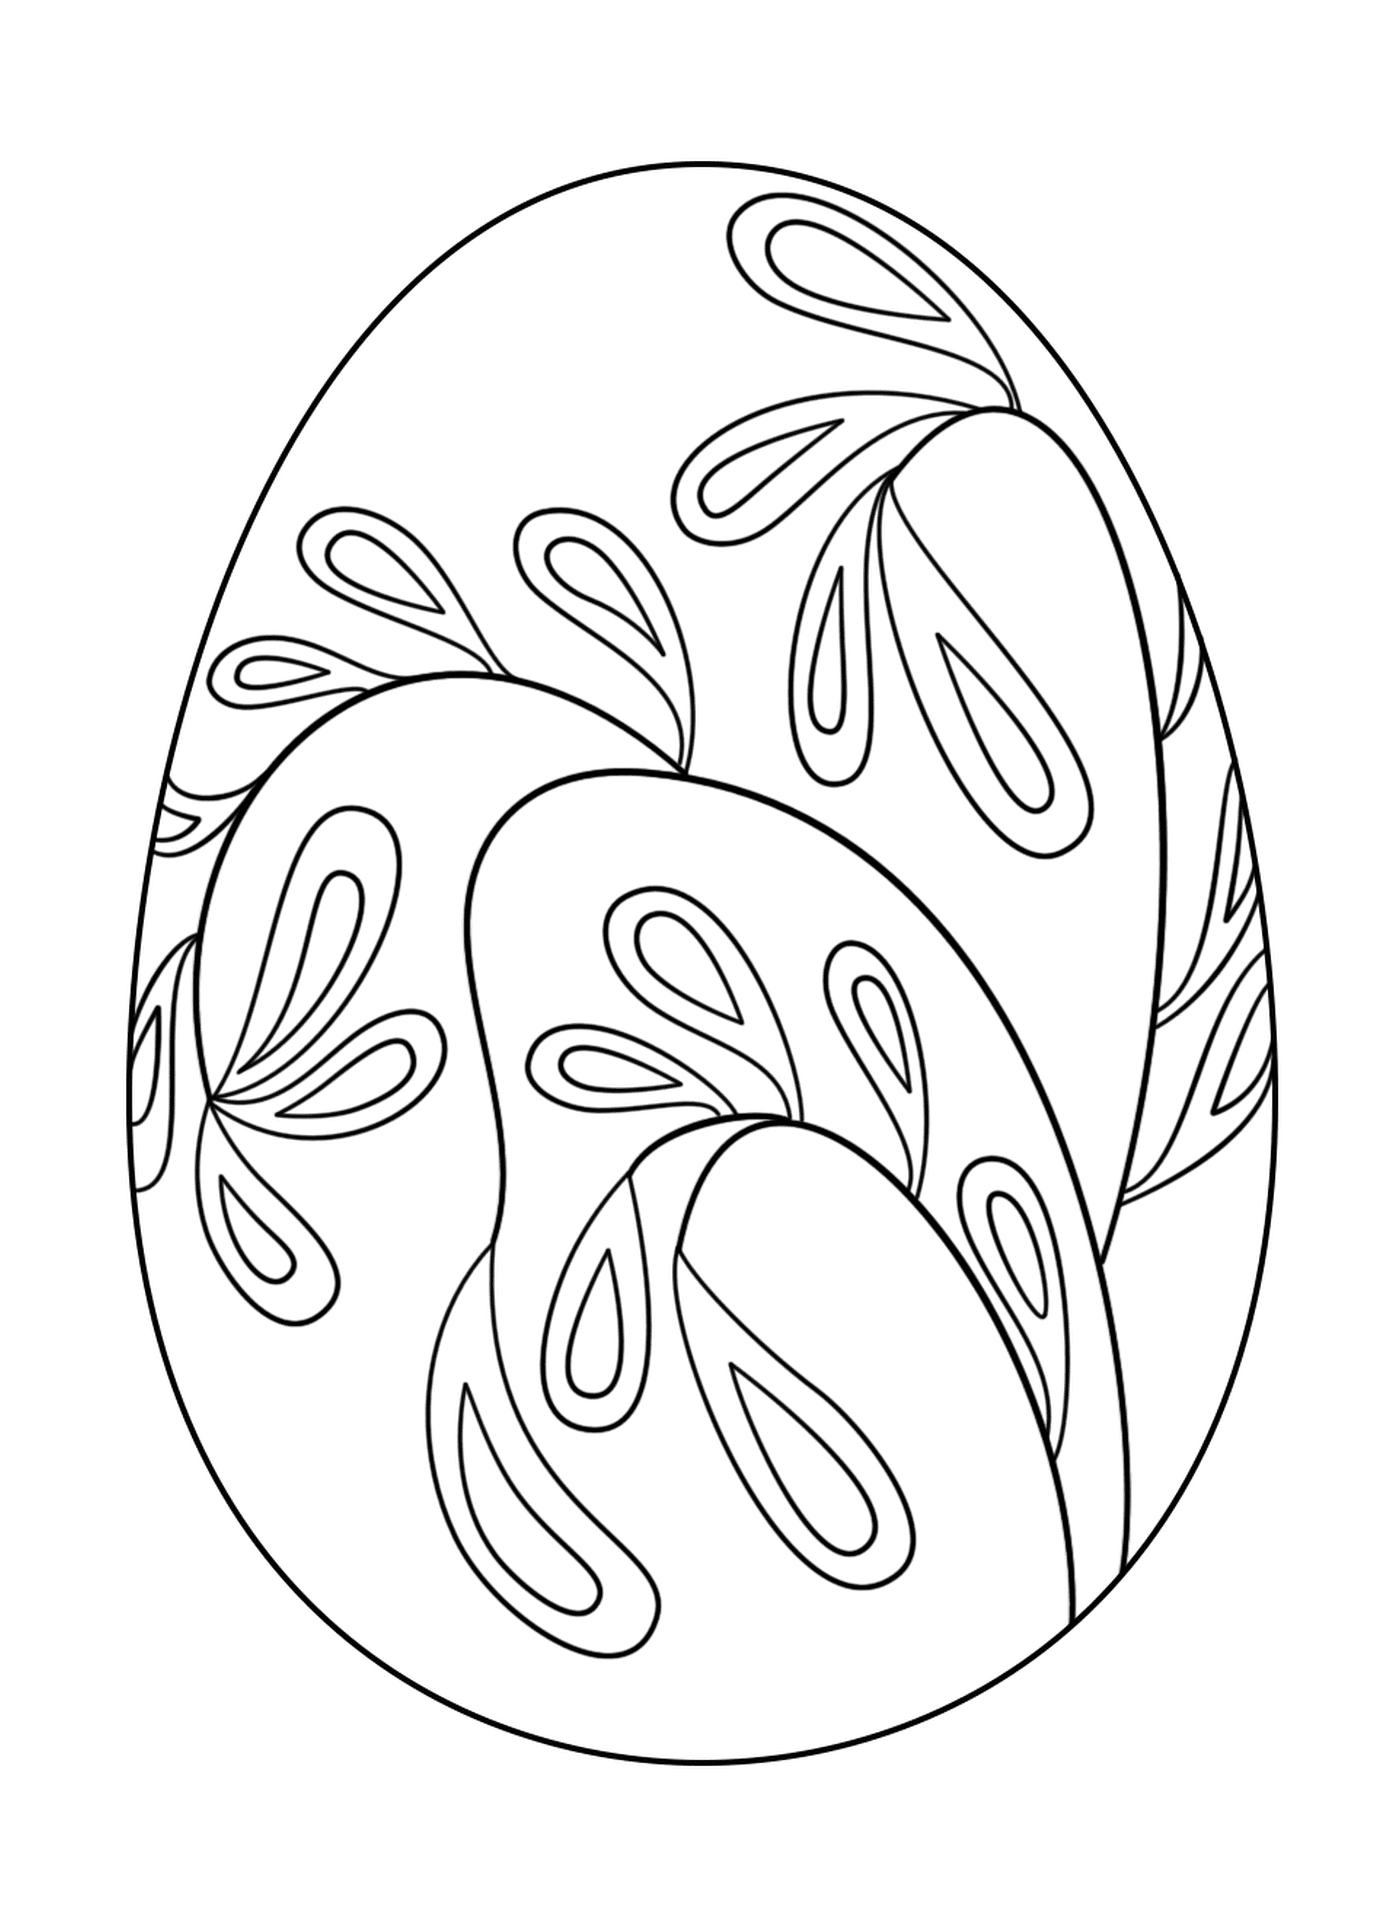  Ovo de Páscoa com padrão floral 